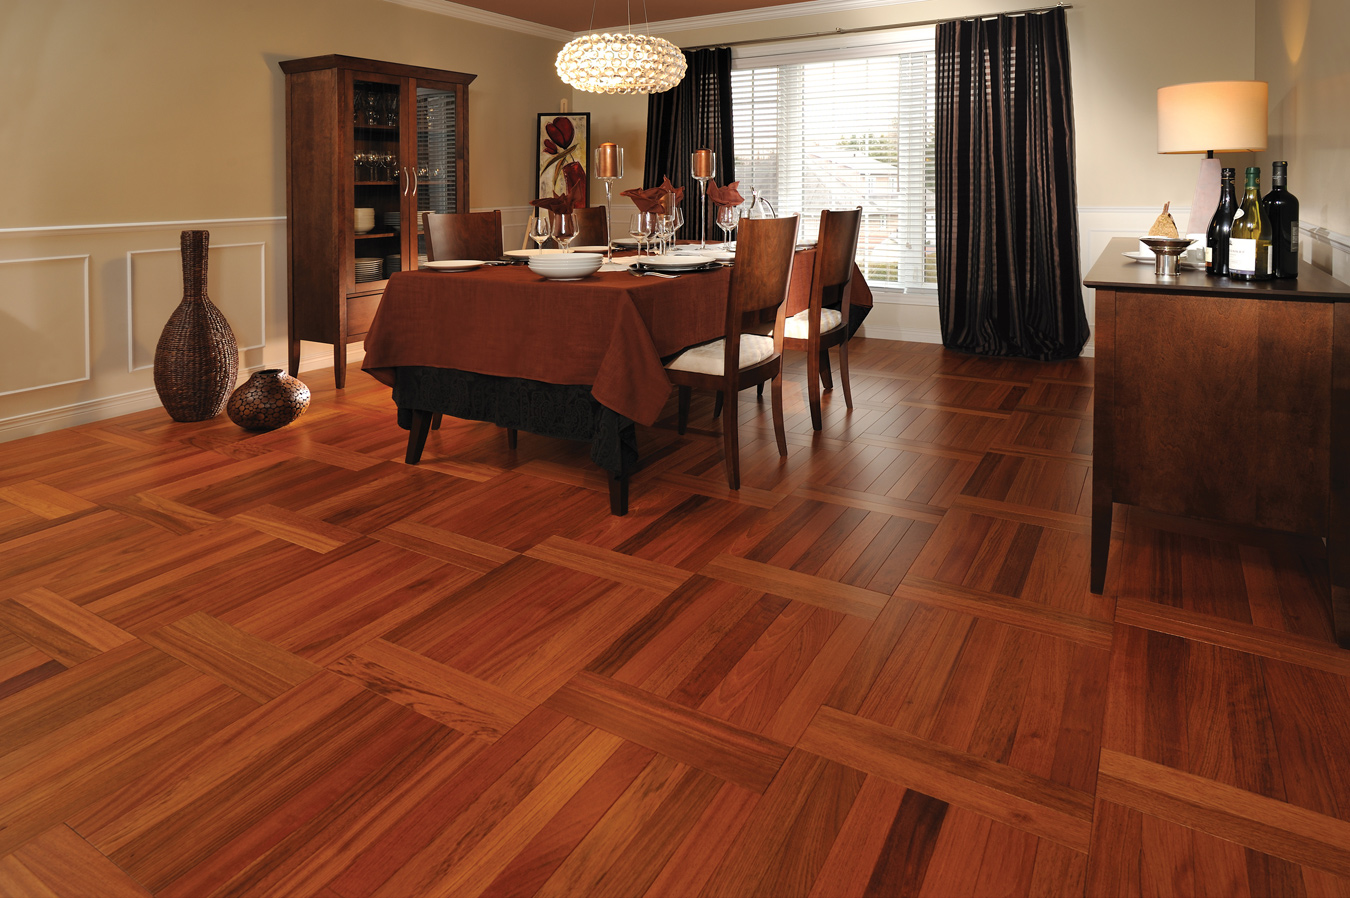 design laminate flooring faux wood flooring bayur borneo floor tile in 2017 including hardwood  designs QGGENZS